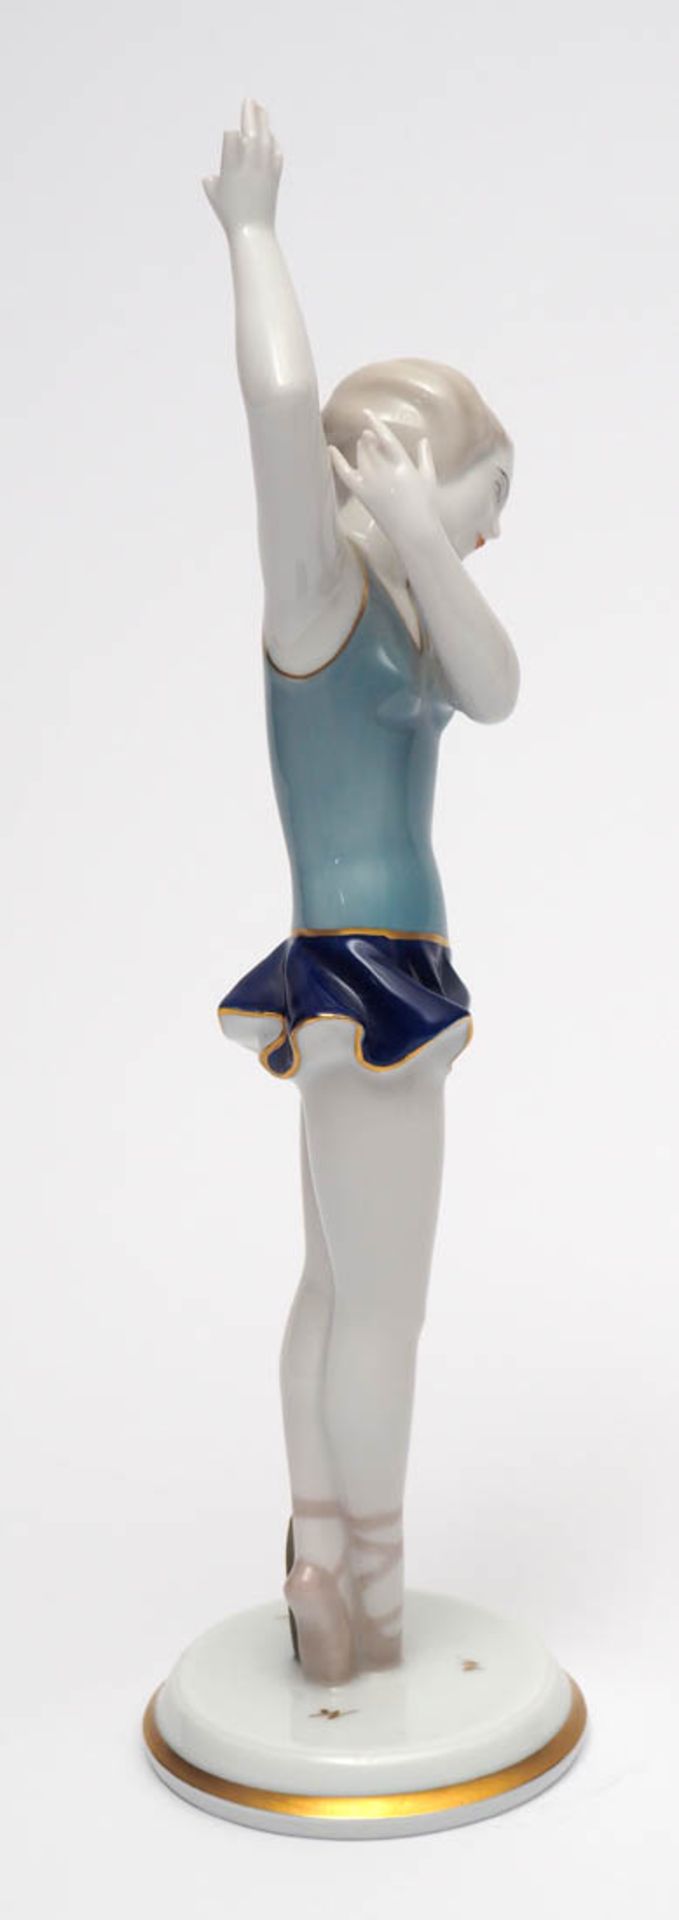 Figurine, Gustav Oppel für Rosenthal, 1928 Auf rundem Sockel Tänzerin in bewegter Haltung. Polychrom - Bild 2 aus 5